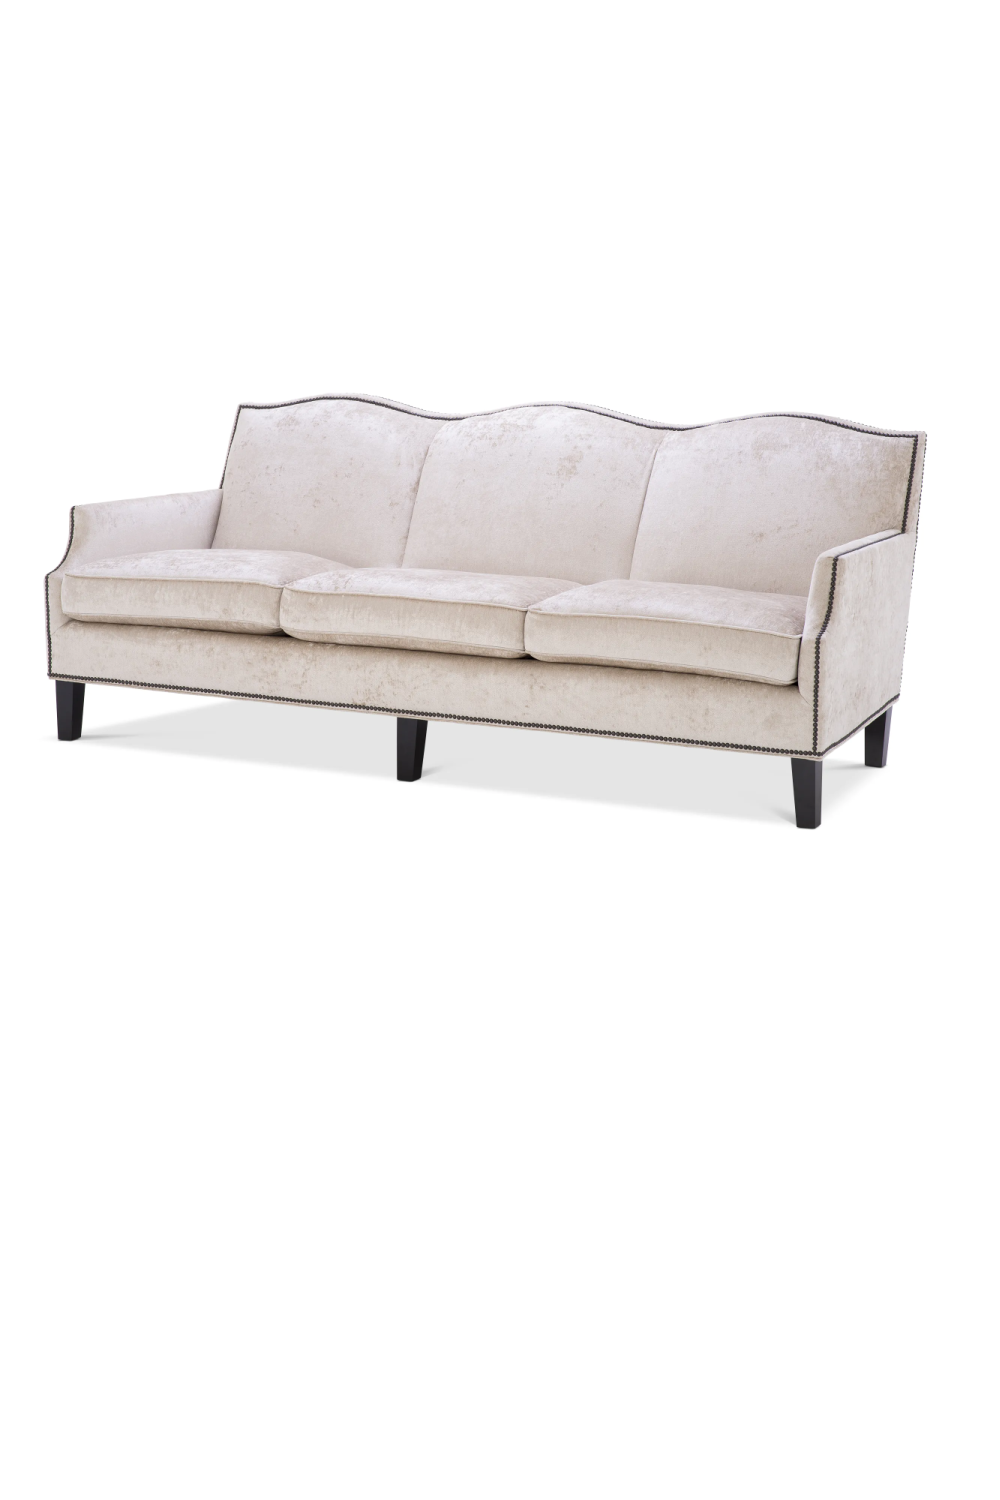 Off-White Studded Trim Sofa | Eichholtz Merlin | Oroa.com